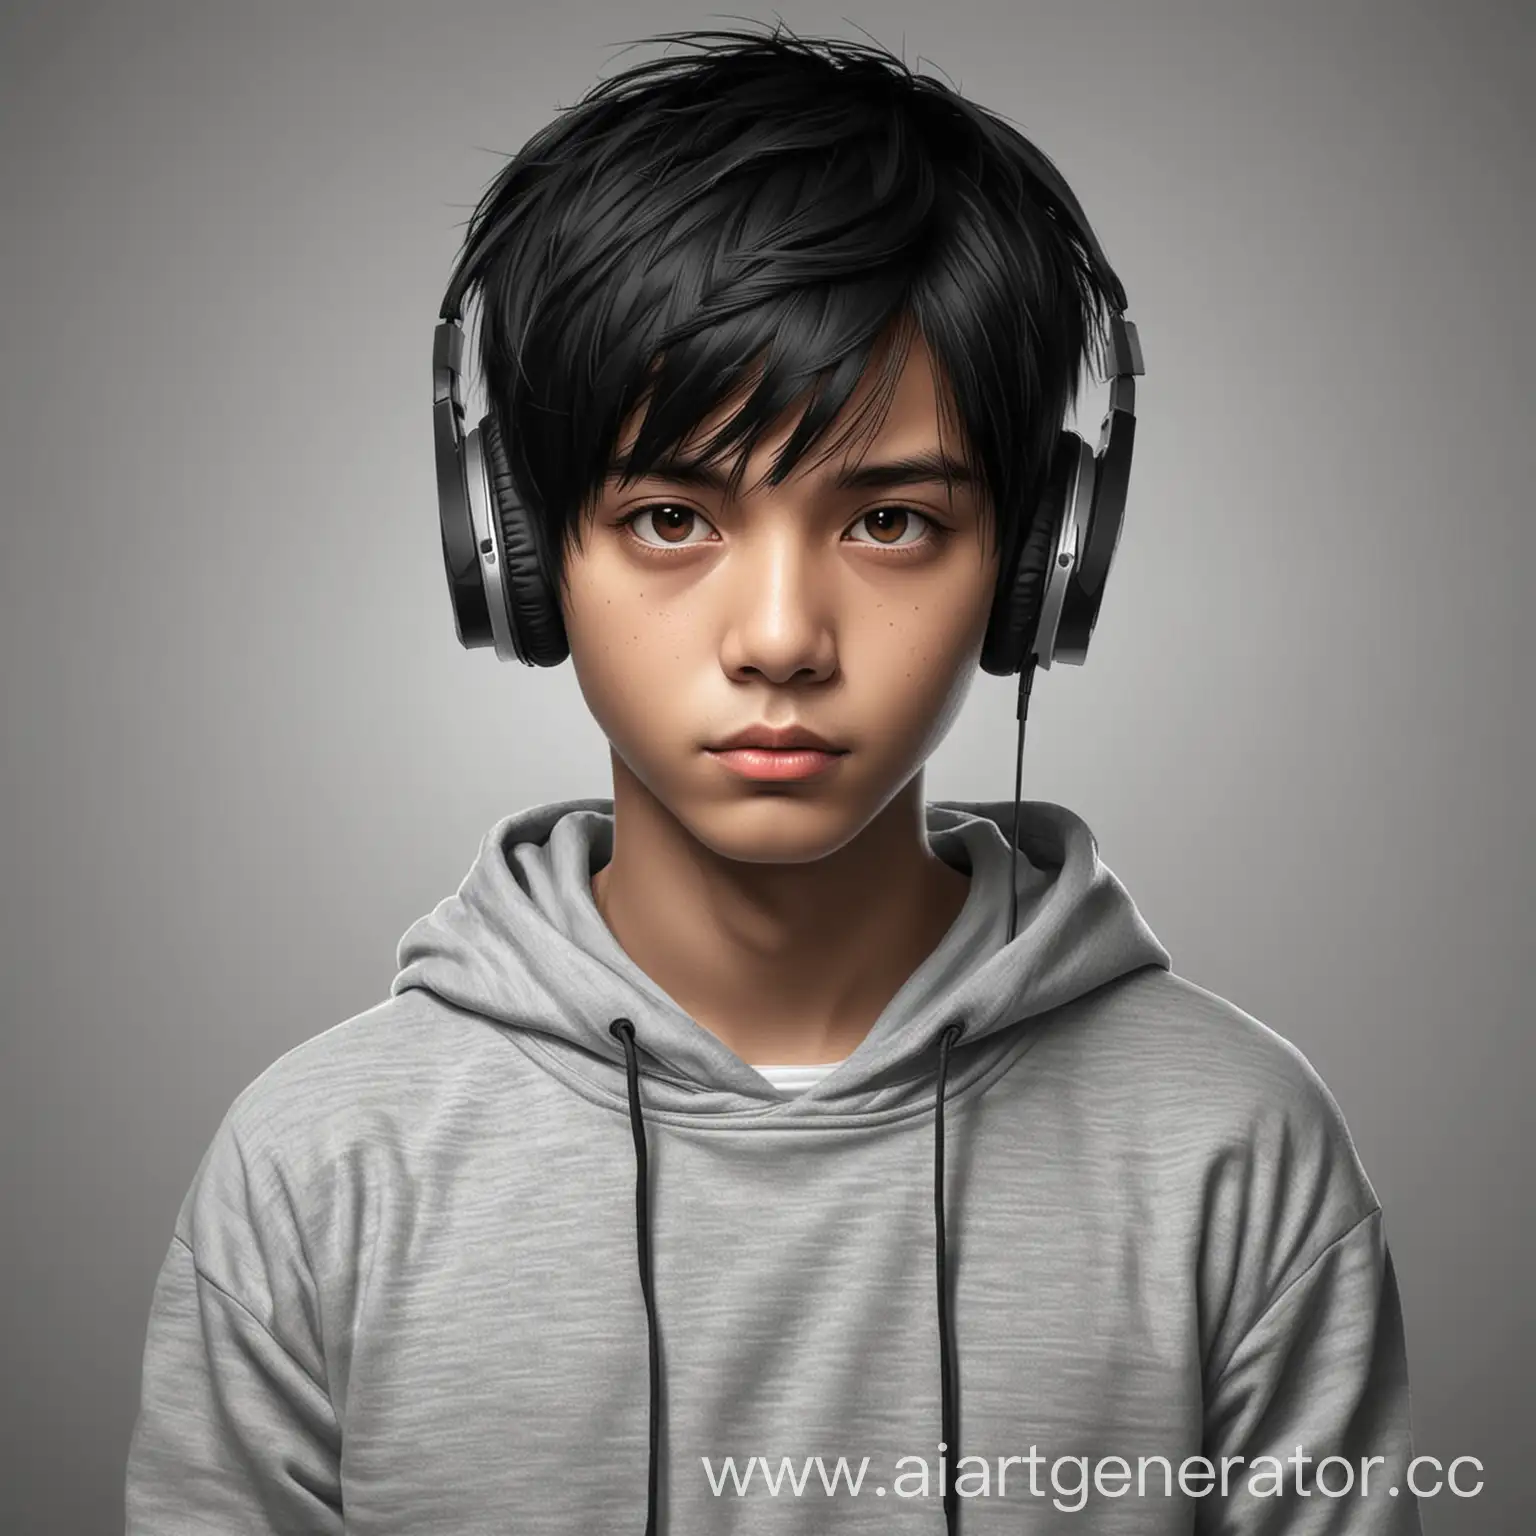 мальчик с черными волосами, карие глаза, в наушниках, в сером худи, на однотонном фоне, с азиатским разрезом глаз, векторное изображение, со стрижкой кроп